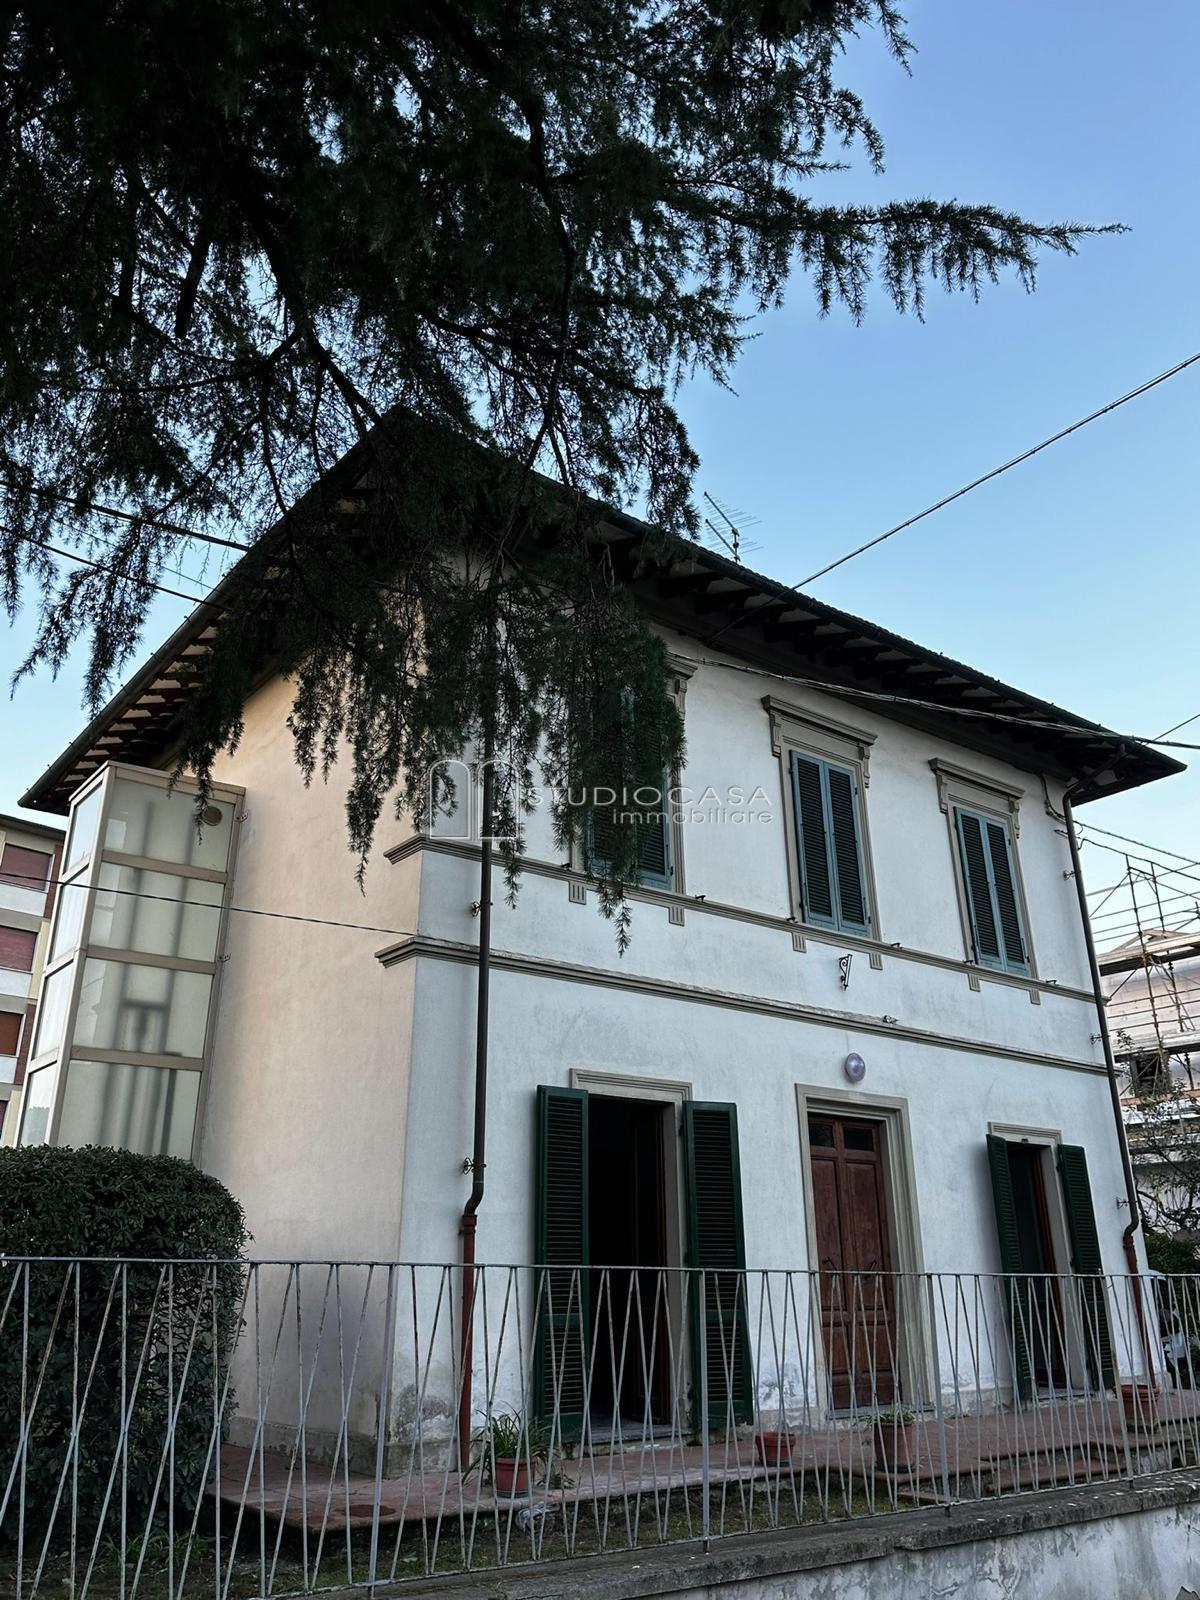 Casa indipendente con giardino, Pisa porta a lucca